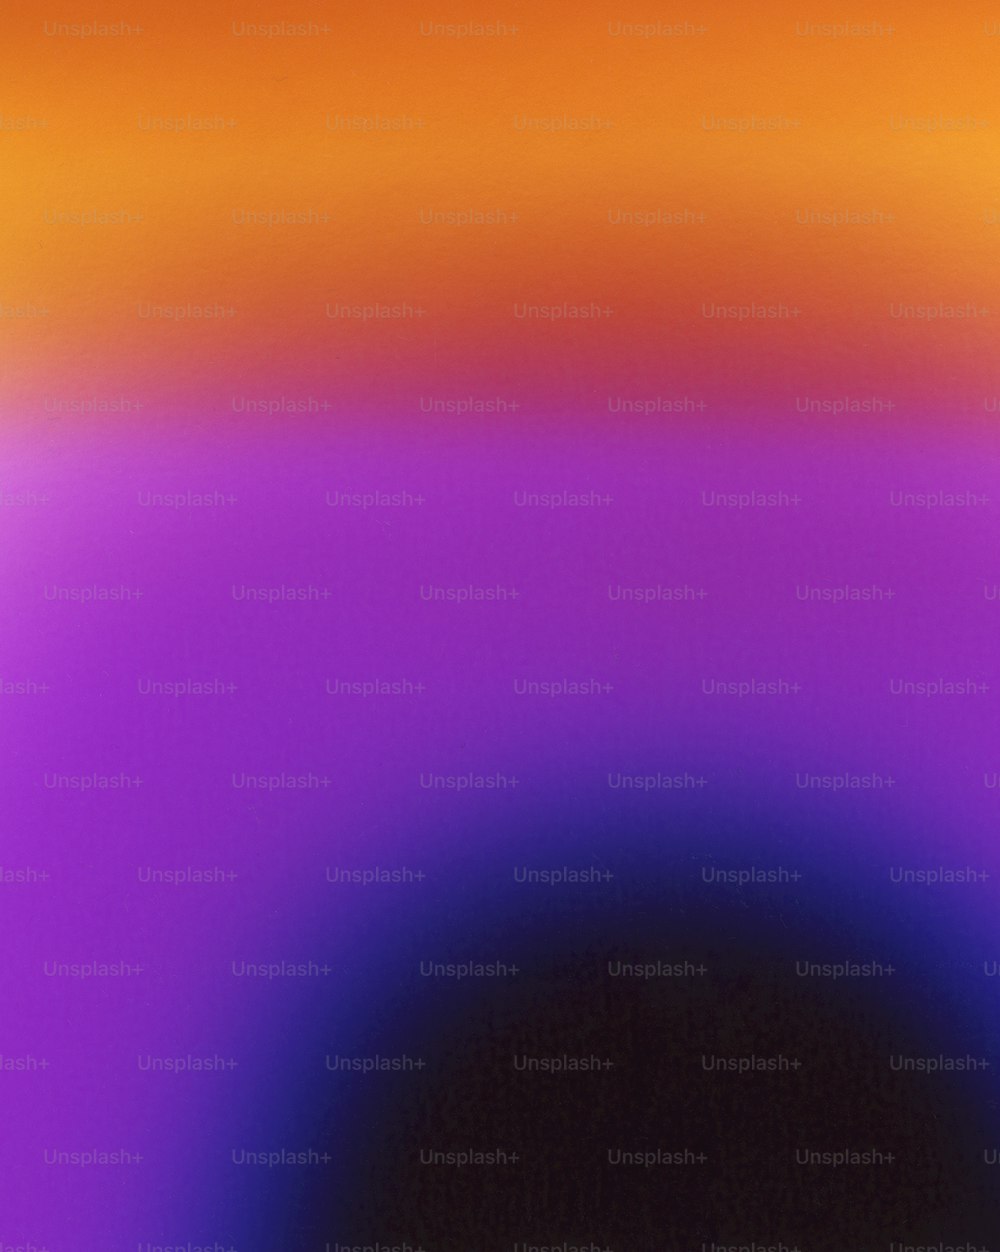 보라색과 주황색 중간에 있는 블랙홀의 흐릿한 이미지